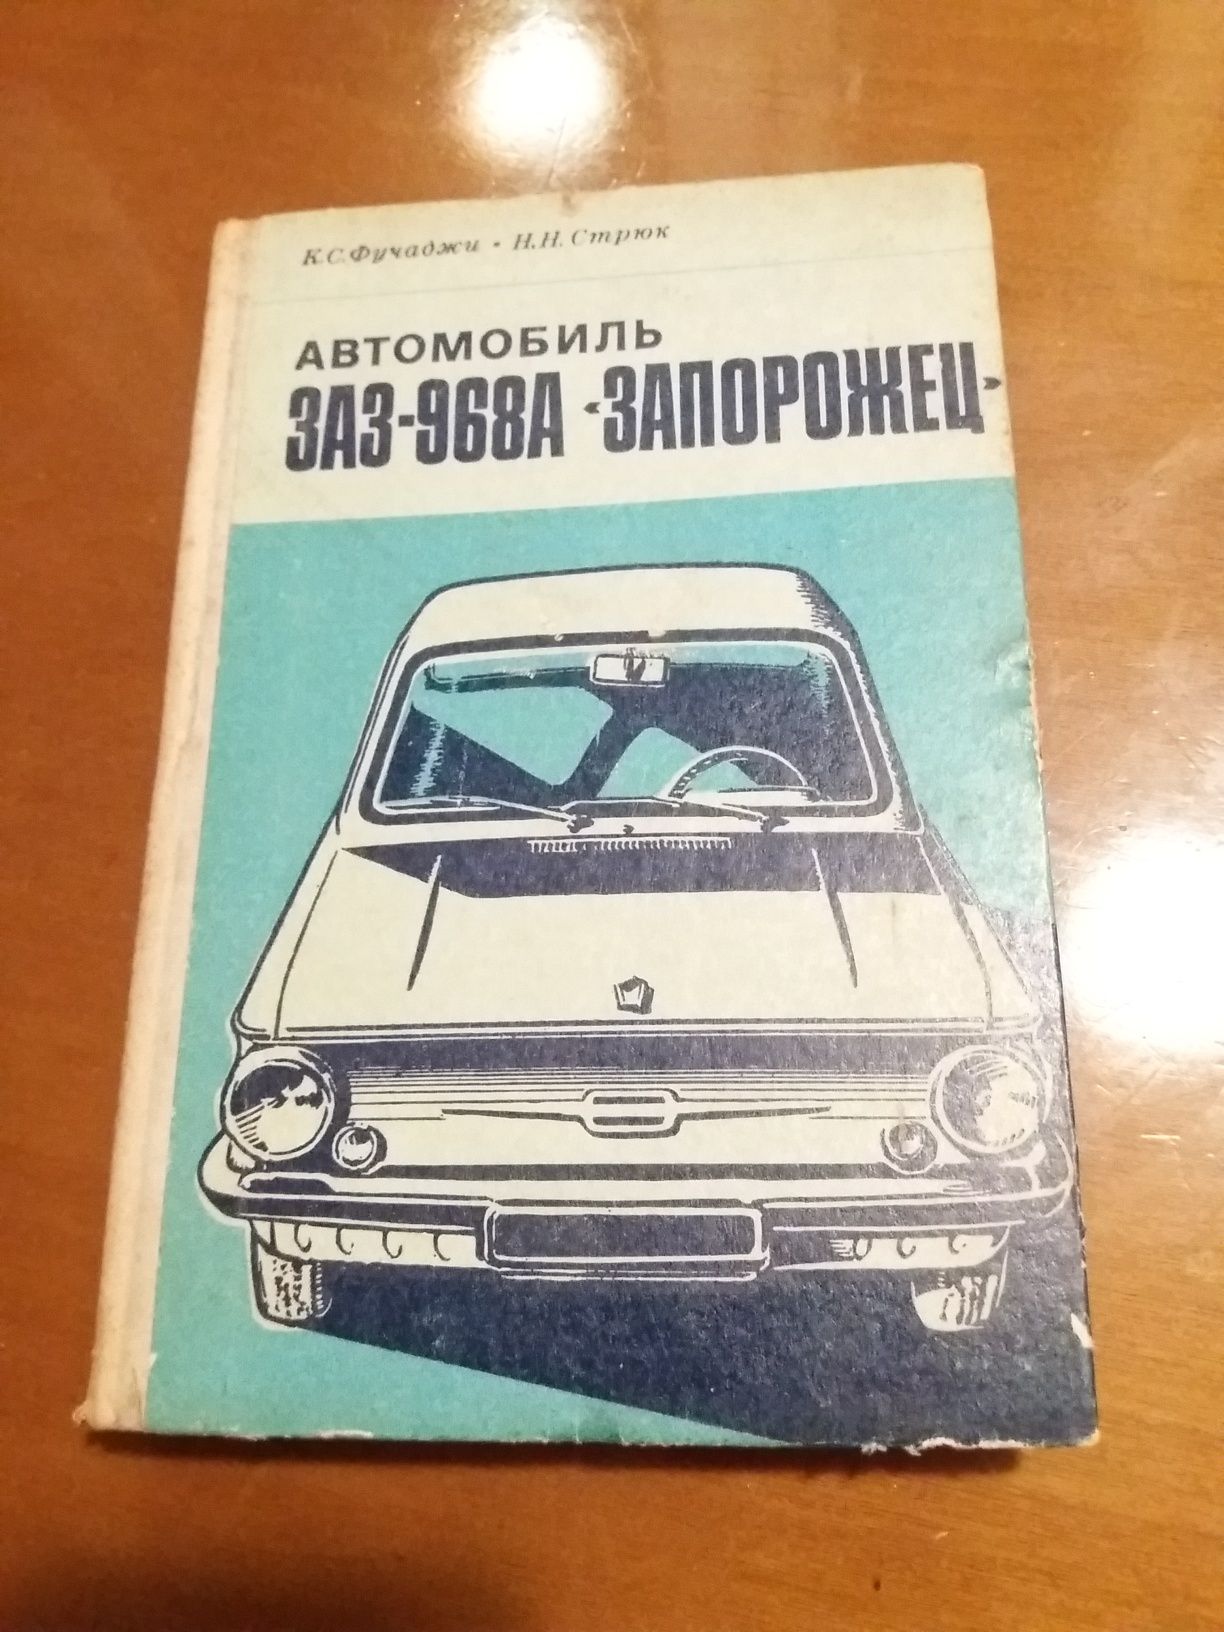 Ретро авто книга "Автомобиль ЗАЗ-968А "Запорожец"